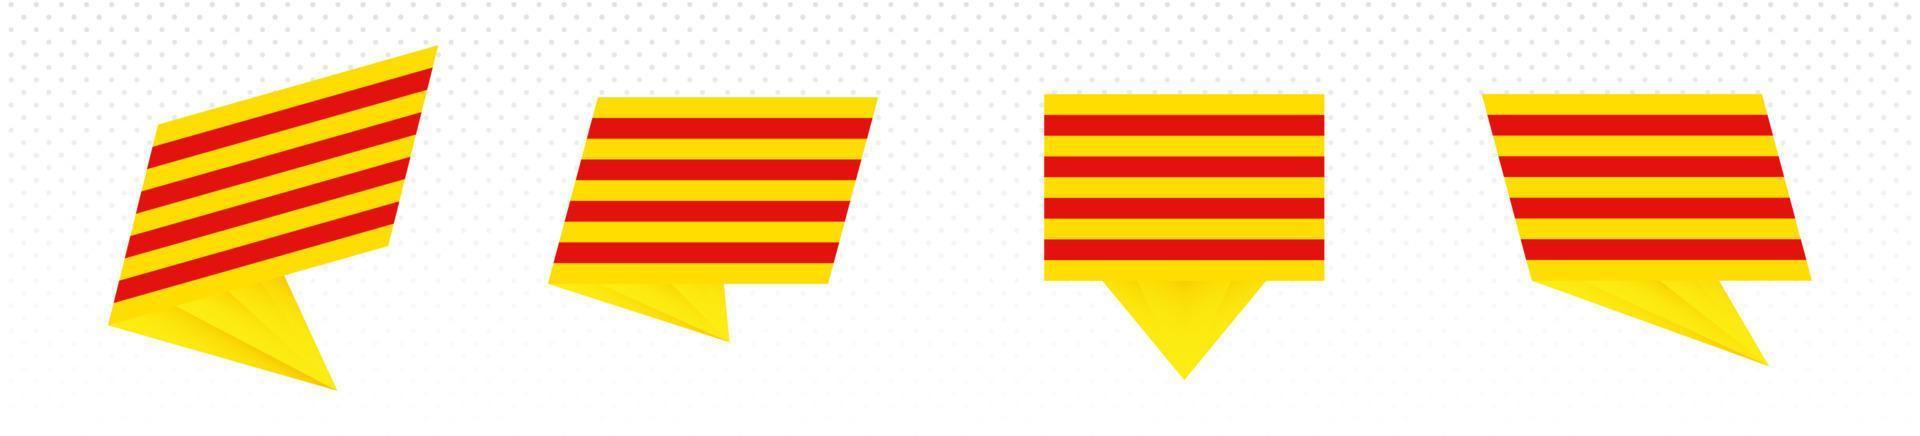 Flagge Kataloniens im modernen abstrakten Design, Flaggensatz. vektor